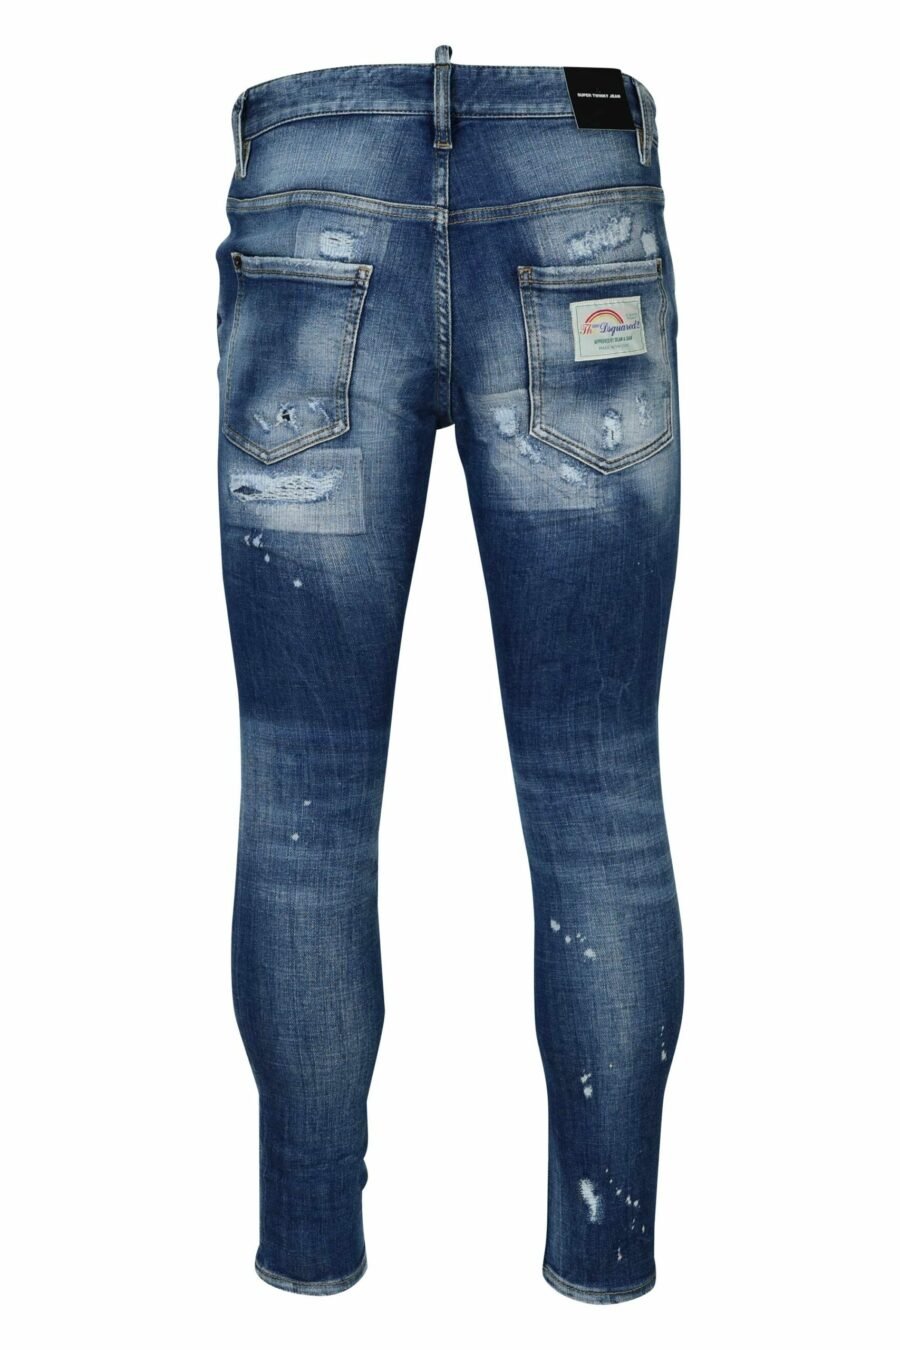 Jean bleu "super twinky jean" avec des déchirures - 8054148339029 2 échelles